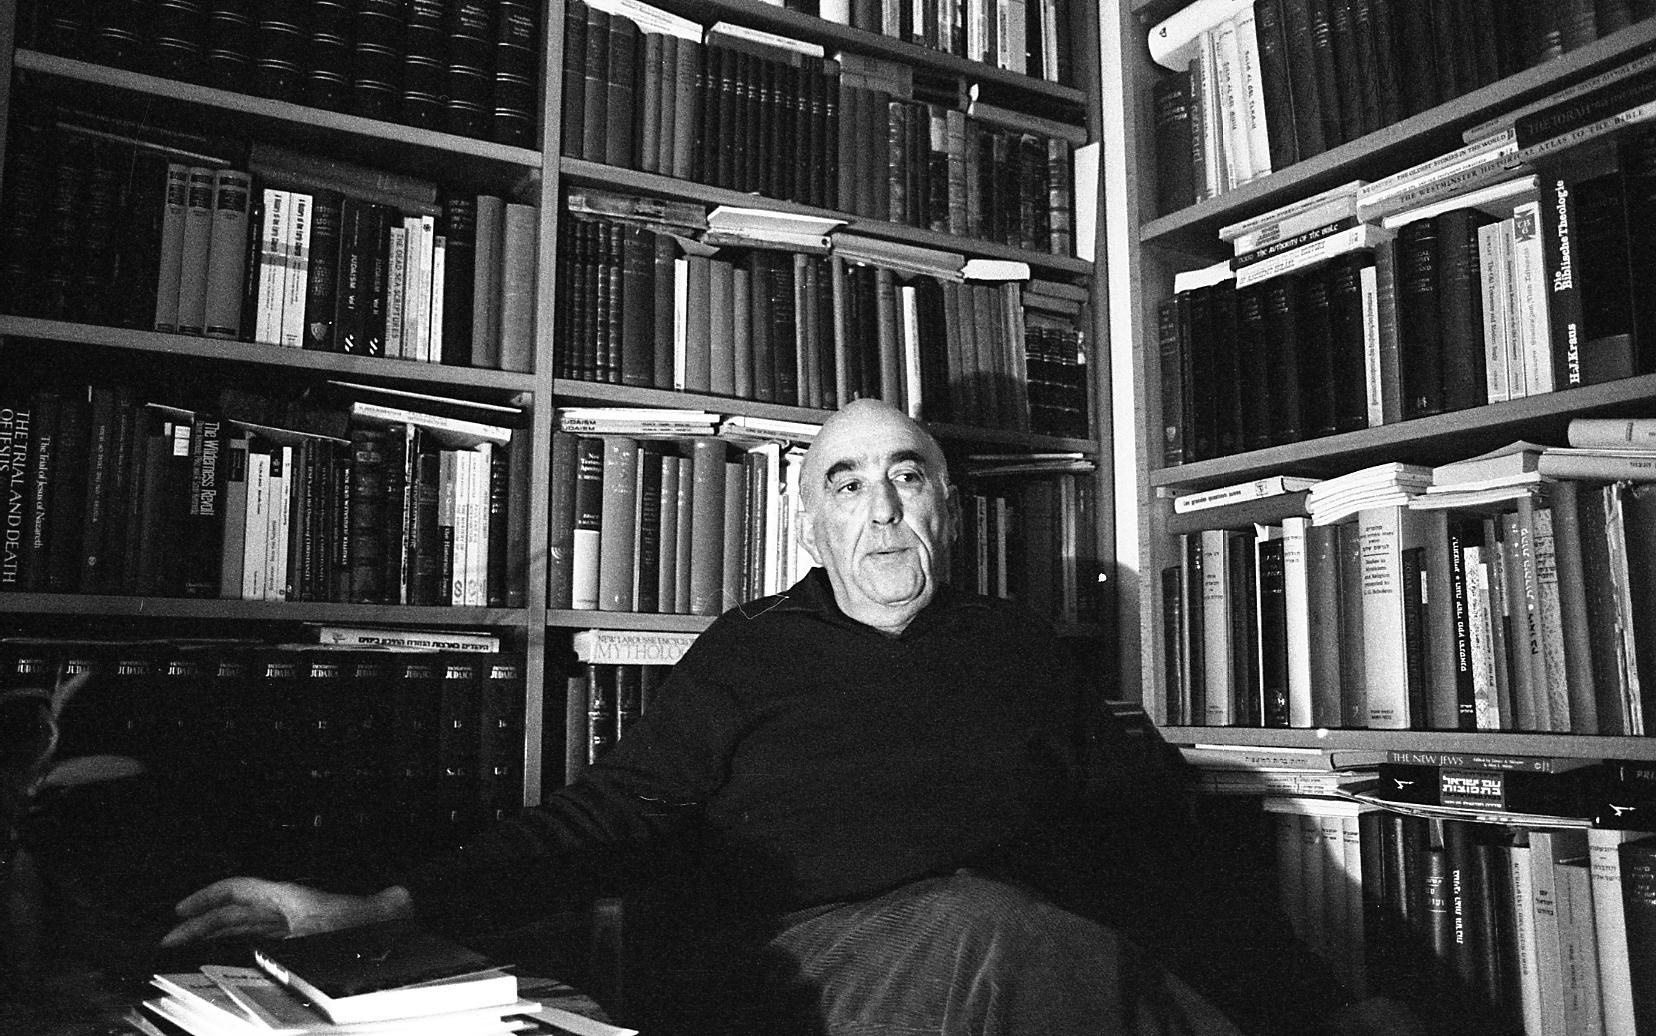 השופט חיים כהן בביתו, 1974 (צילום: ארכיון עליזה אורבך, הספרייה הלאומית)